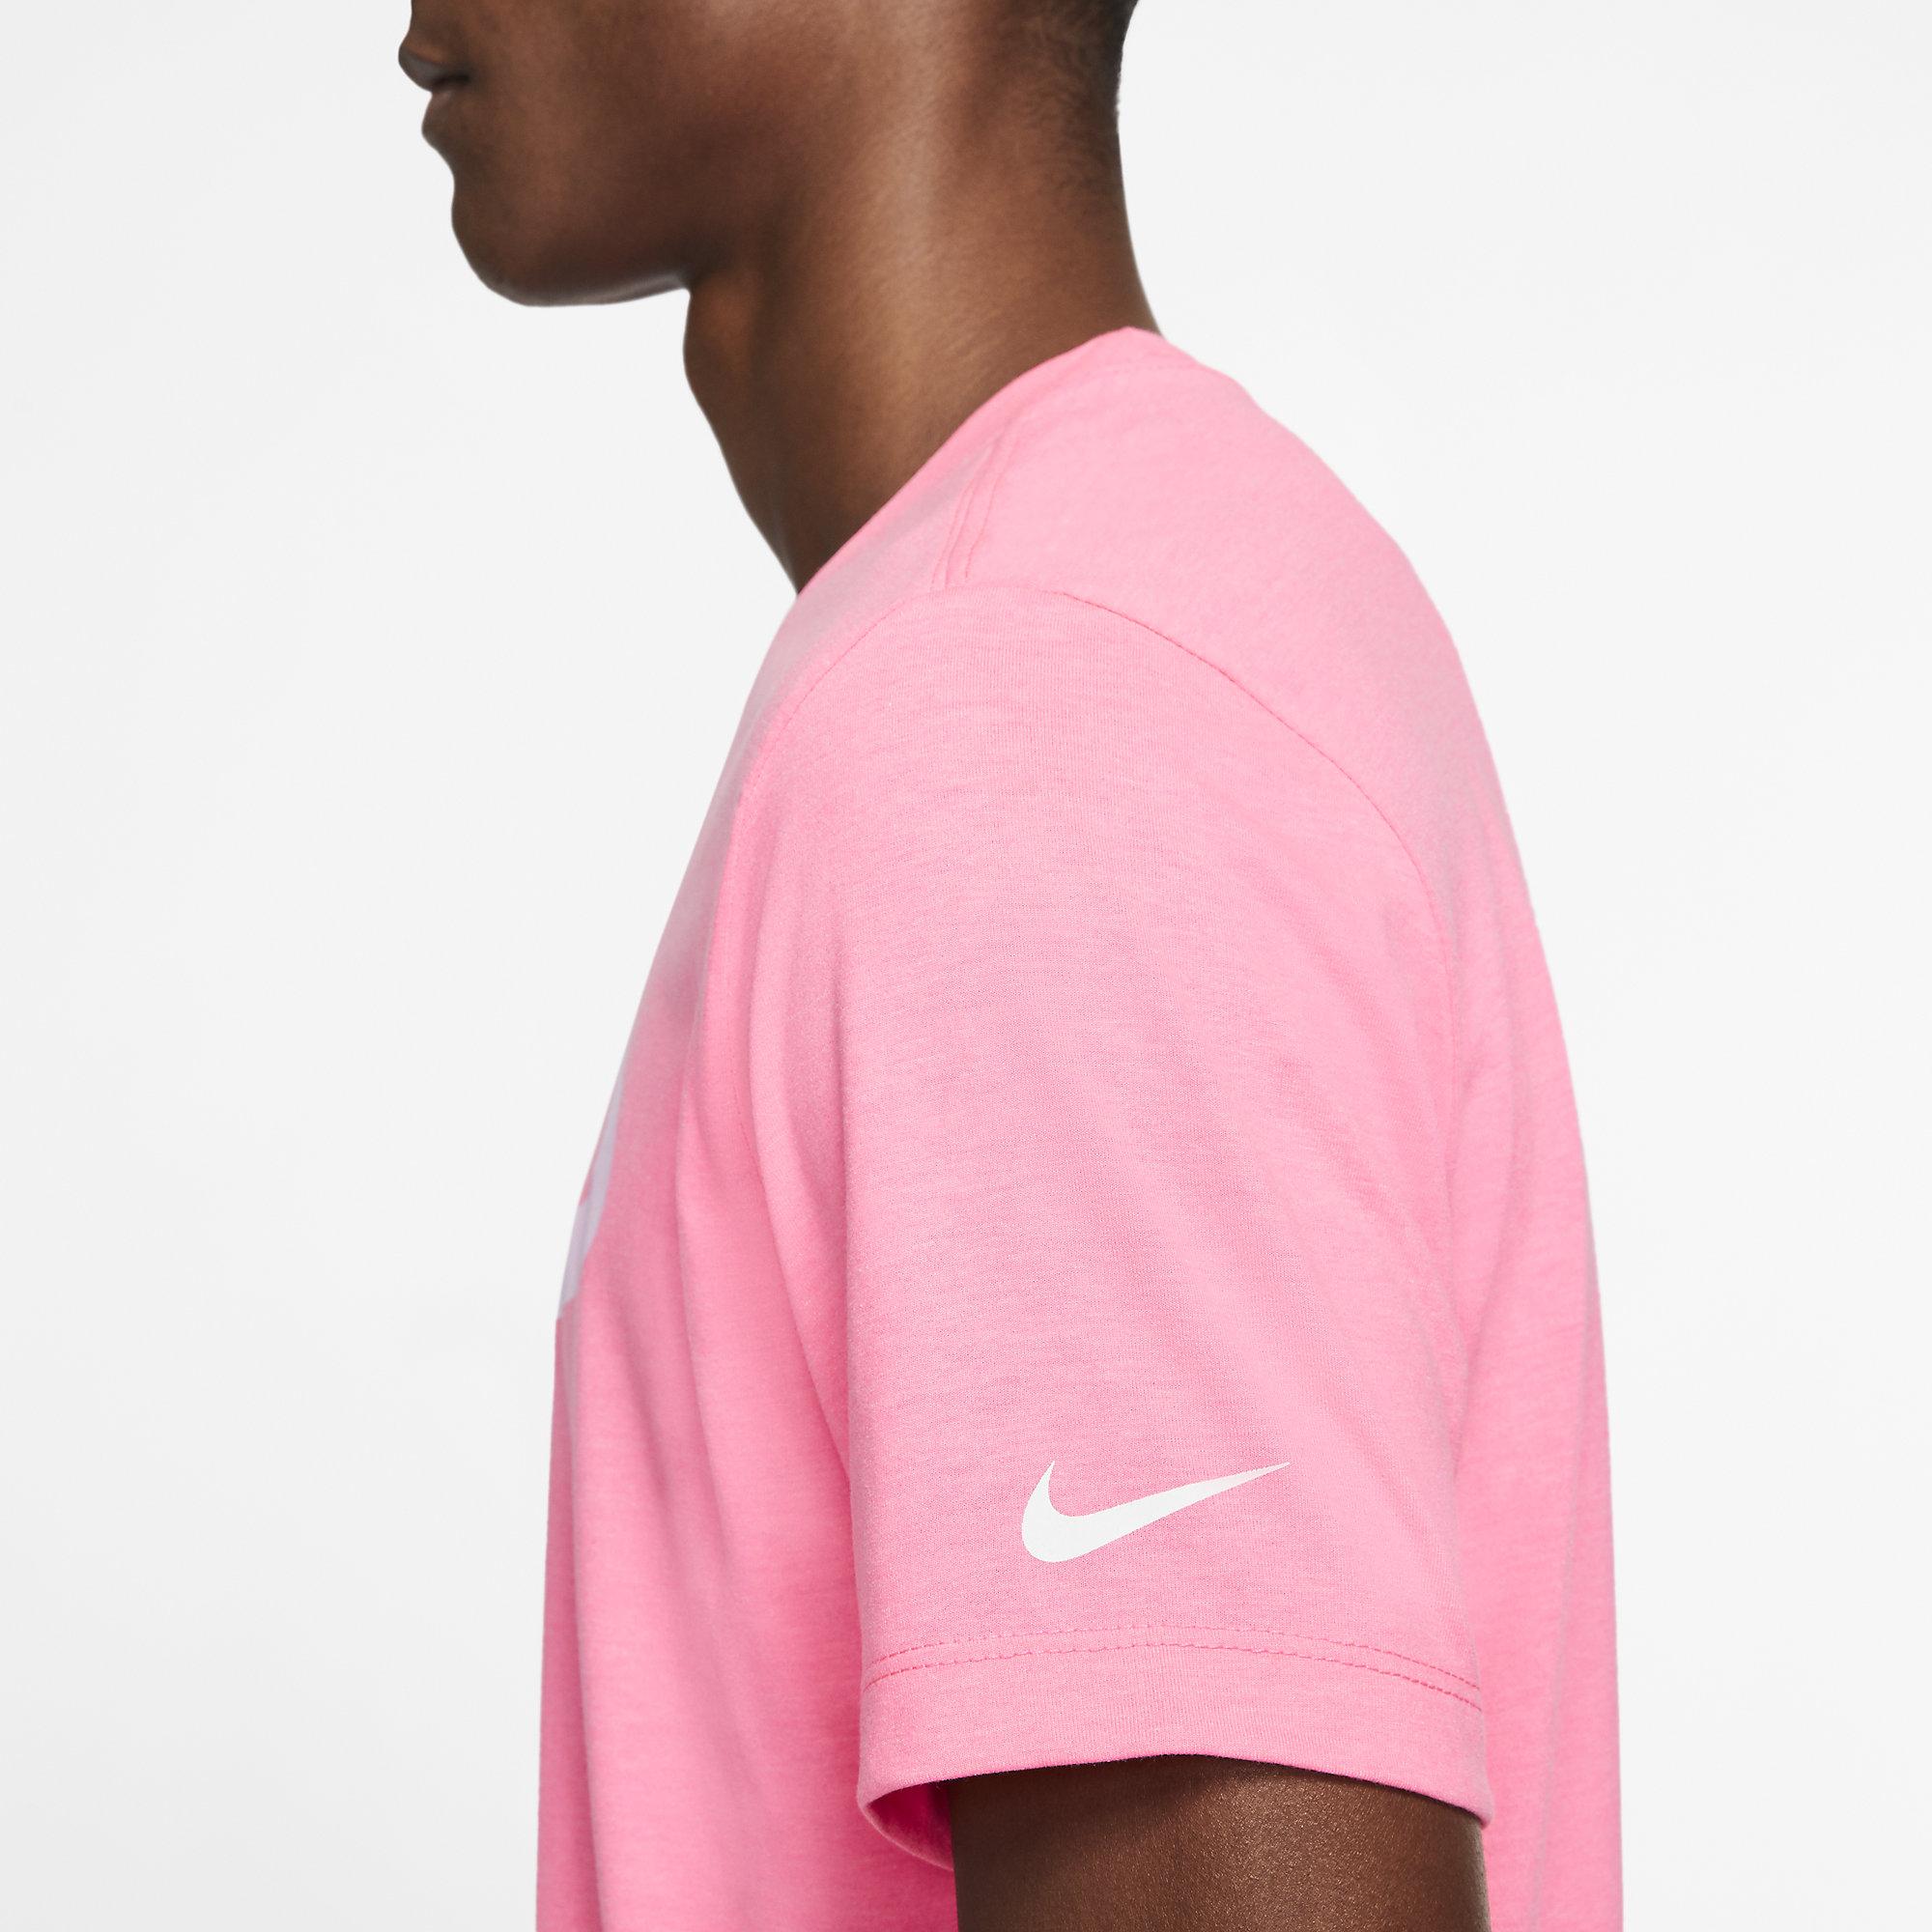 Nike Mens Dri-FIT Rafa Tee - Digital Pink - Tennisnuts.com